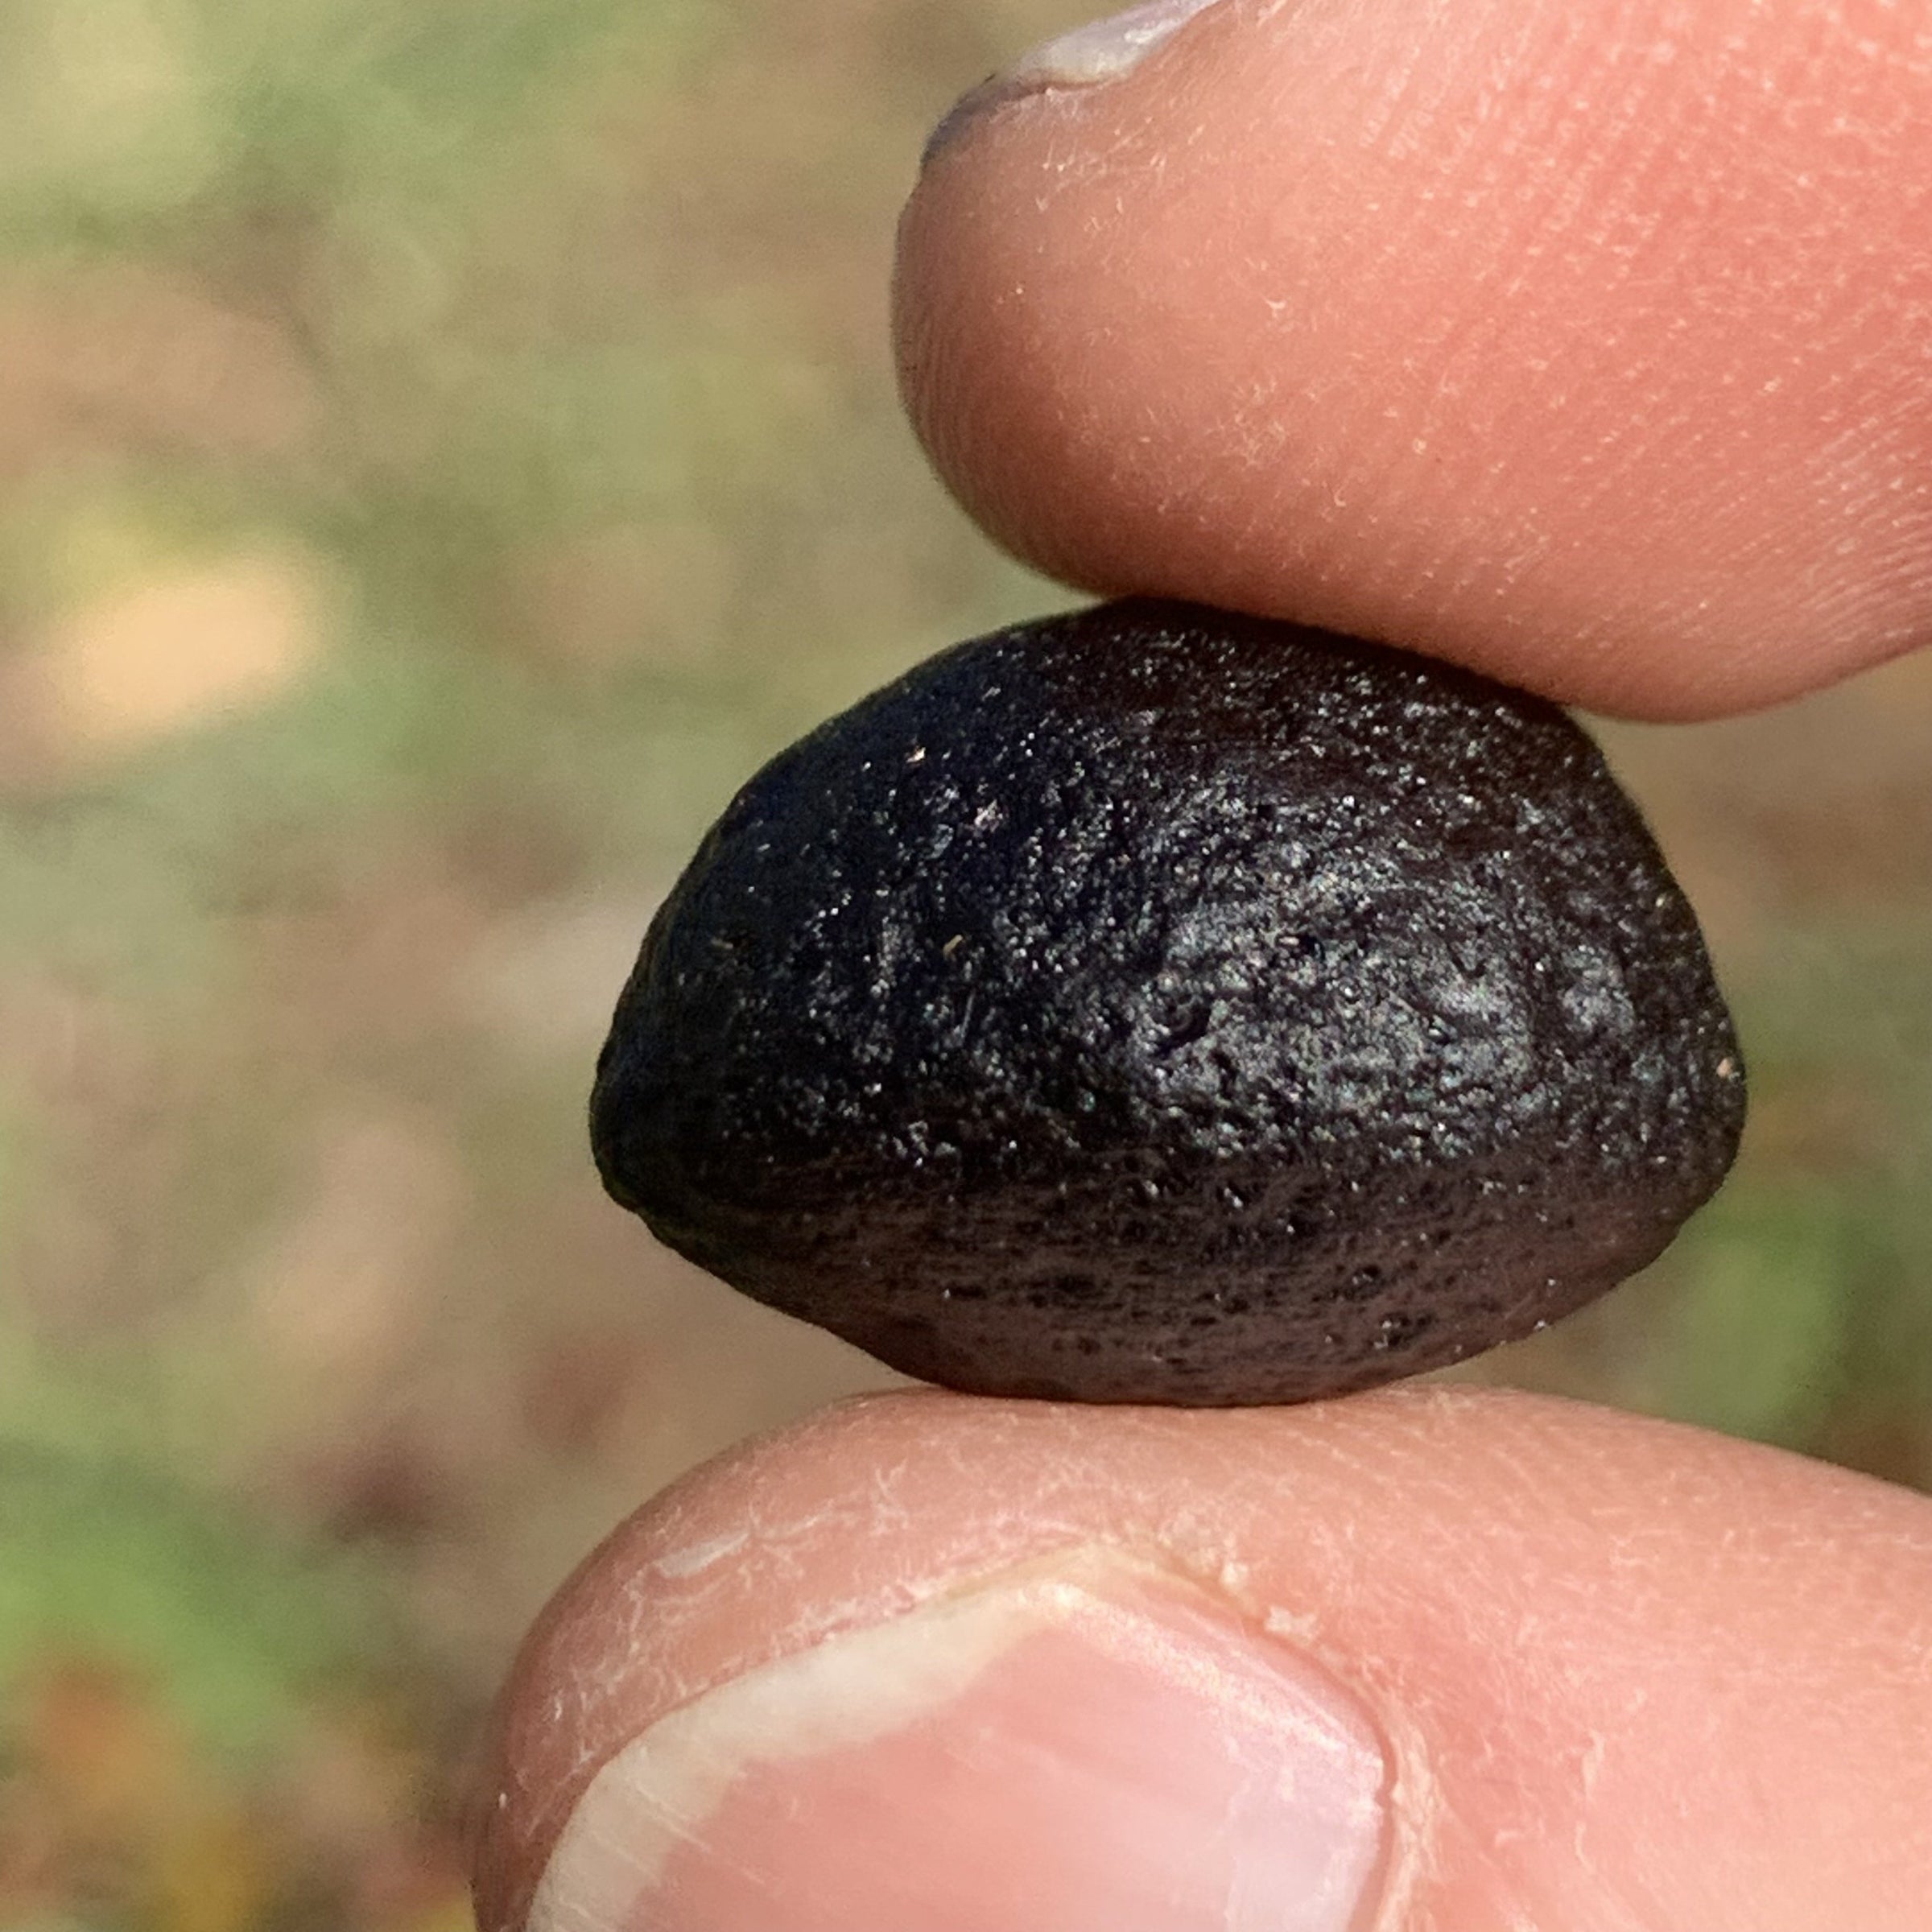 Australite Tektite 4.7 grams AU28-Moldavite Life